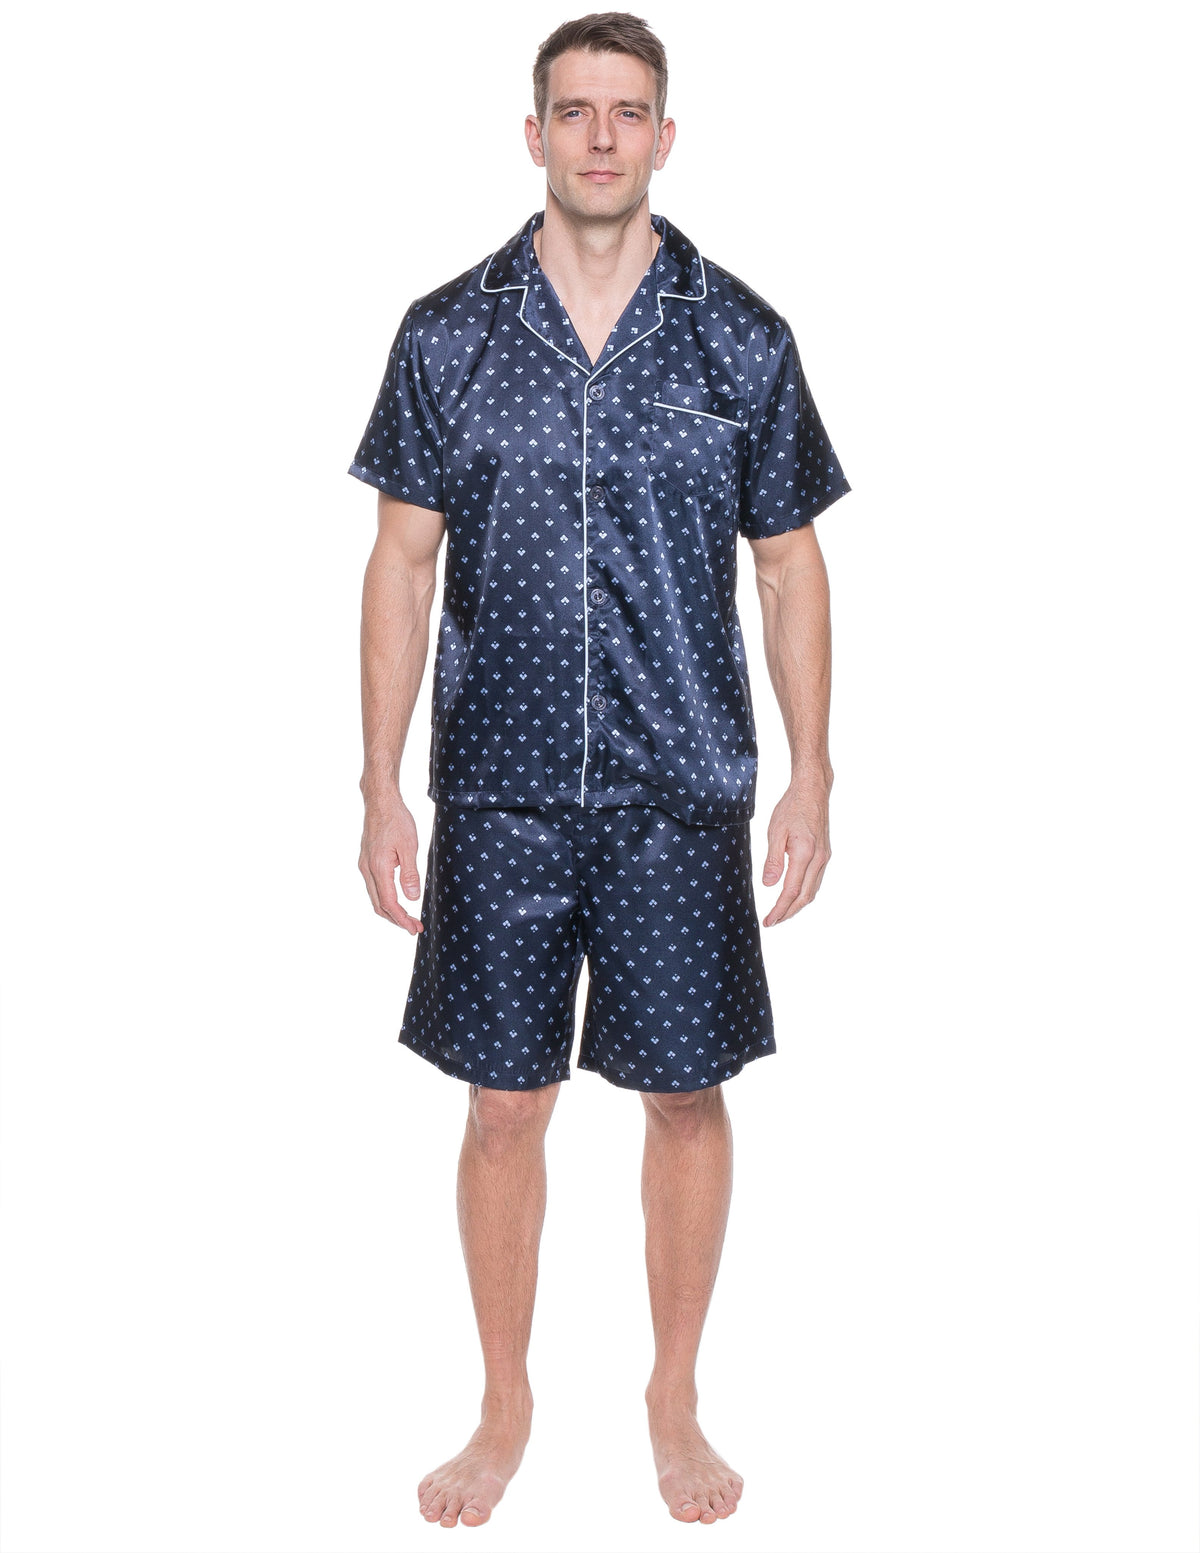 Mens Satin Short Sleepwear/Pajama Set - Diamond Squares Dark Blue